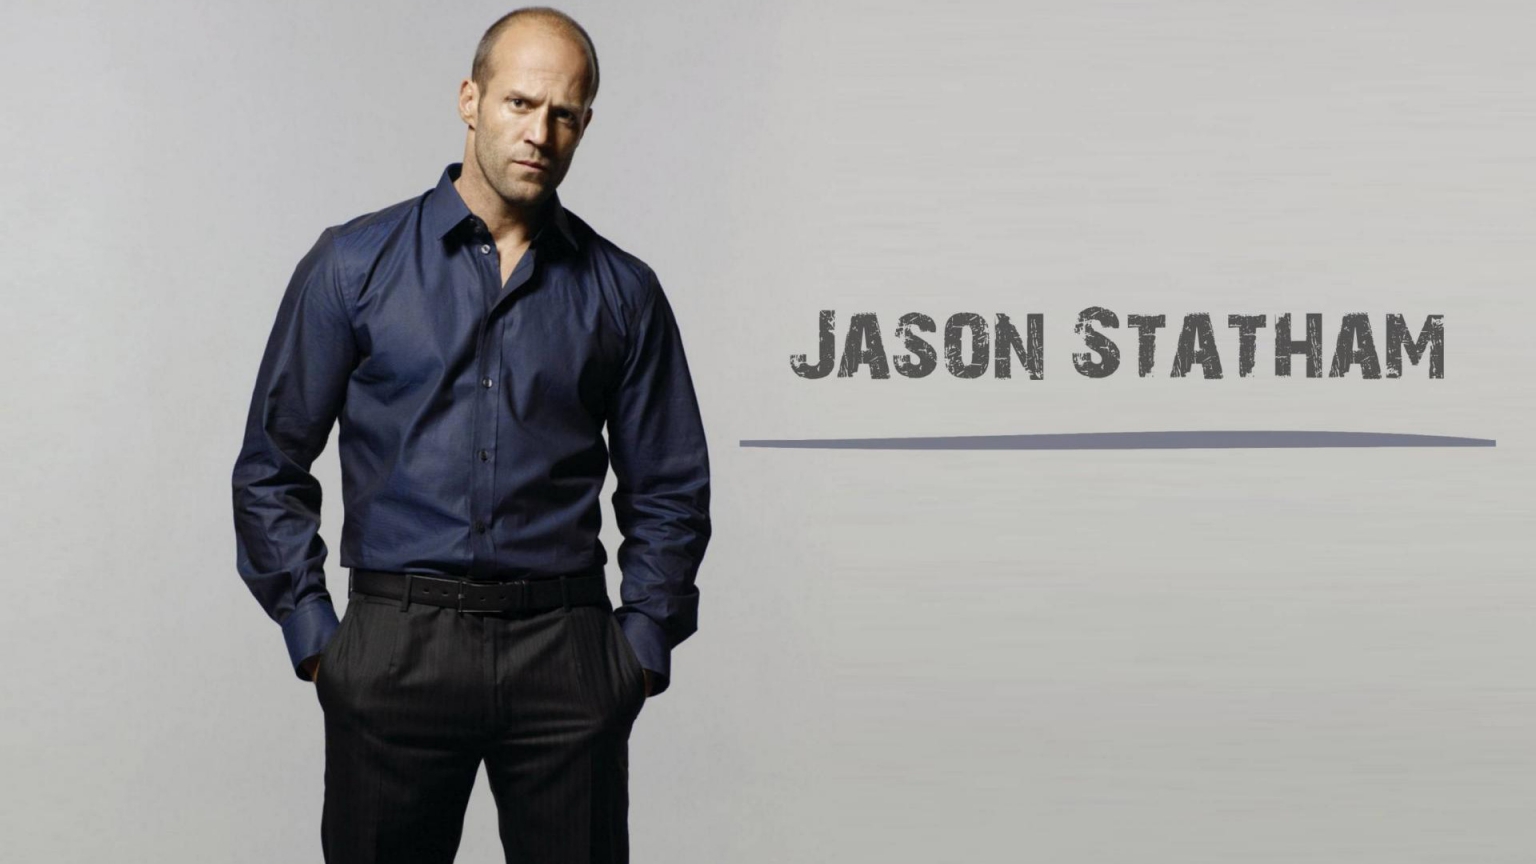 Jason Statham Poster for 1536 x 864 HDTV resolution